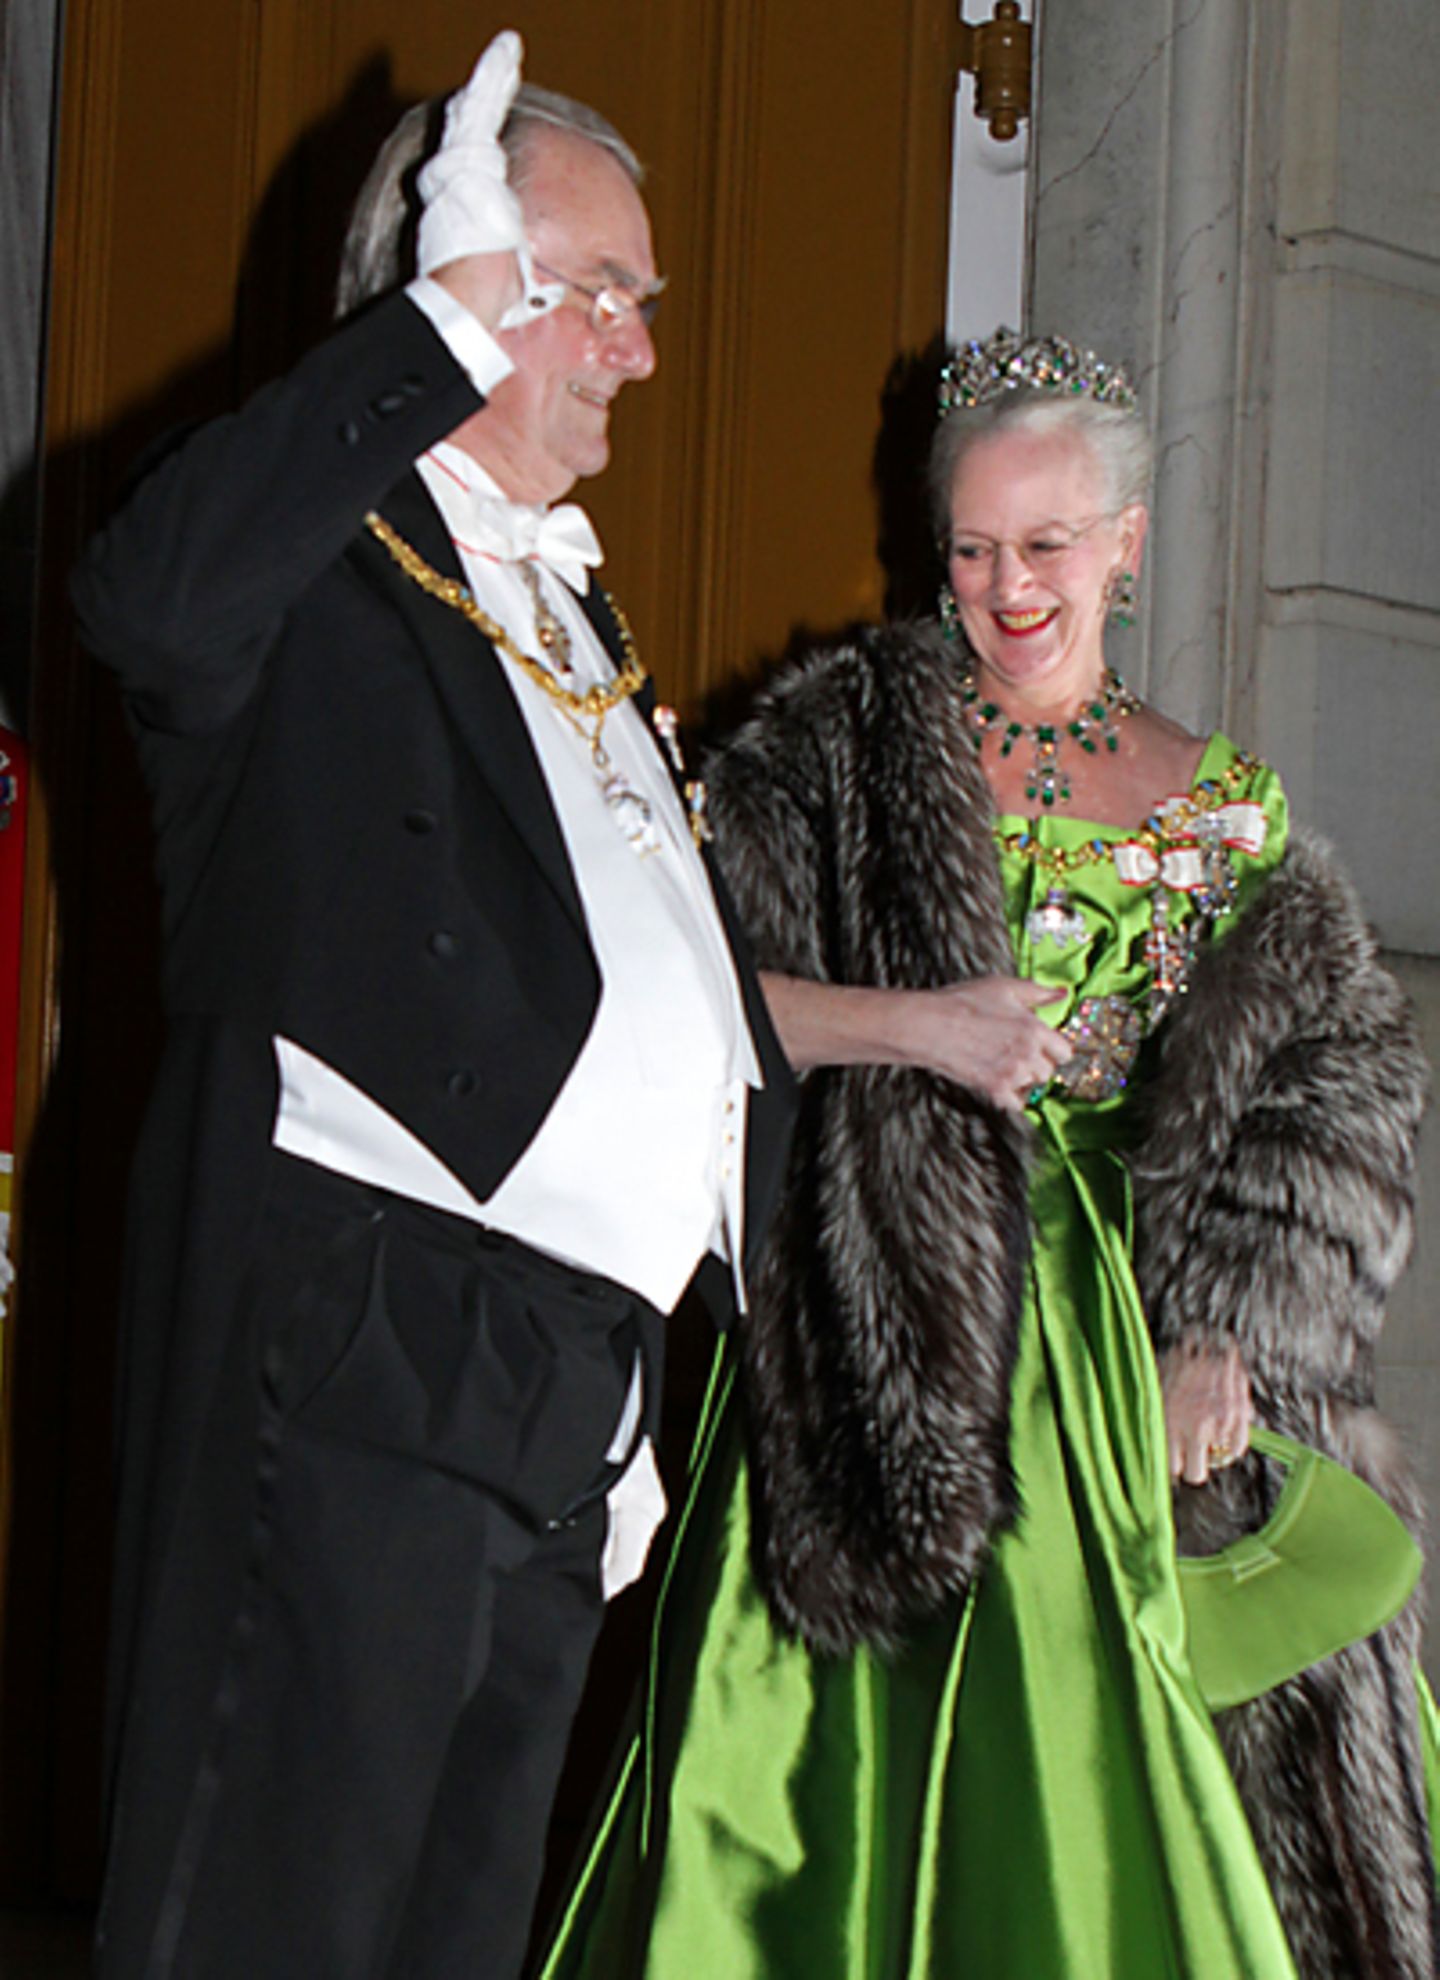 1. Januar 2011: Beim diesjährigen Neujahrsempfang auf Schloss Amalienborg bemekrt Prinz Henrik nicht, dass seine Hose offensteht